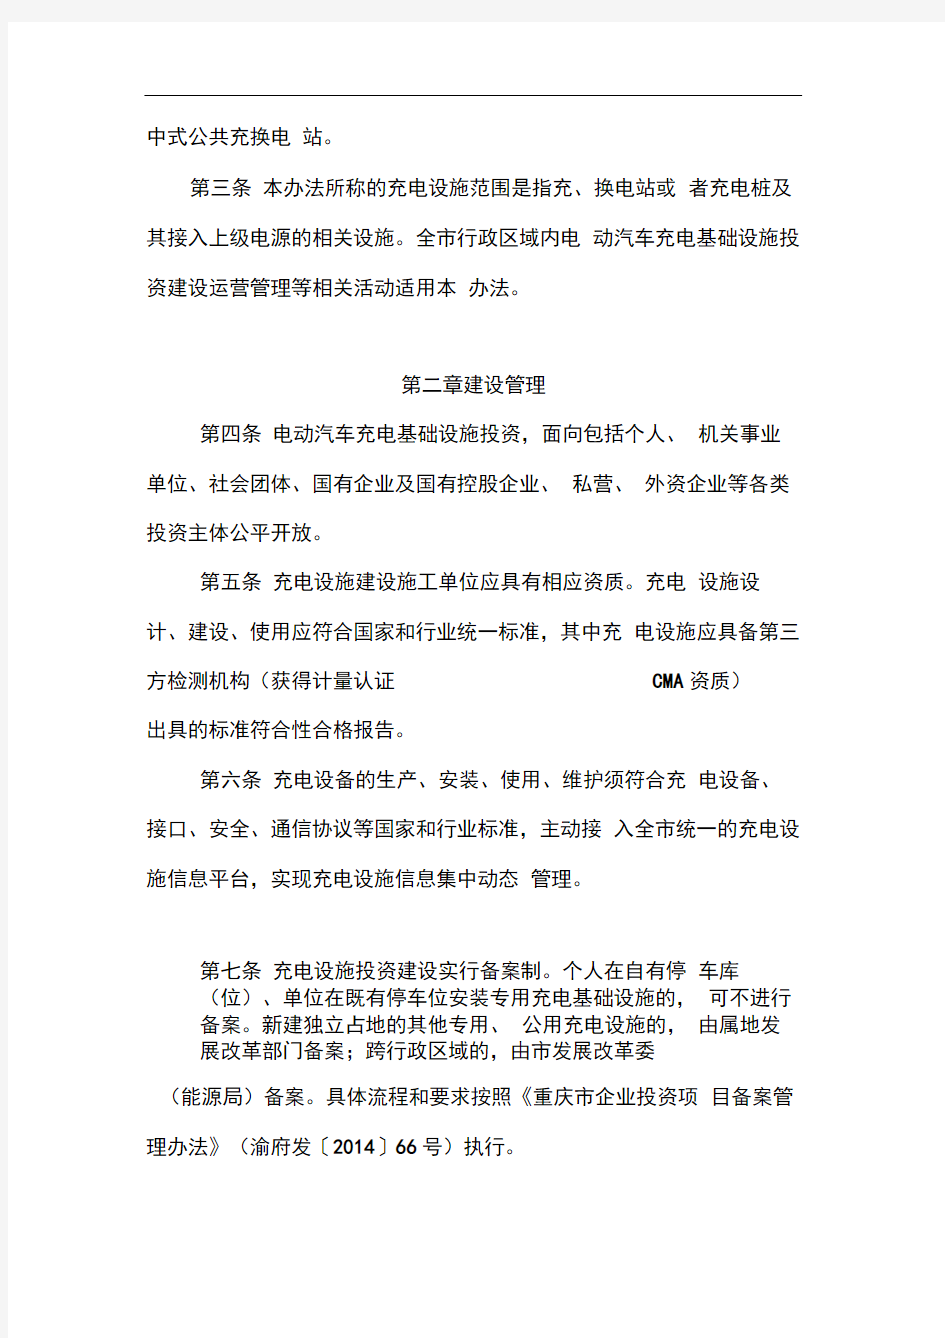 重庆电动汽车充电基础设施建设运营管理暂行办法